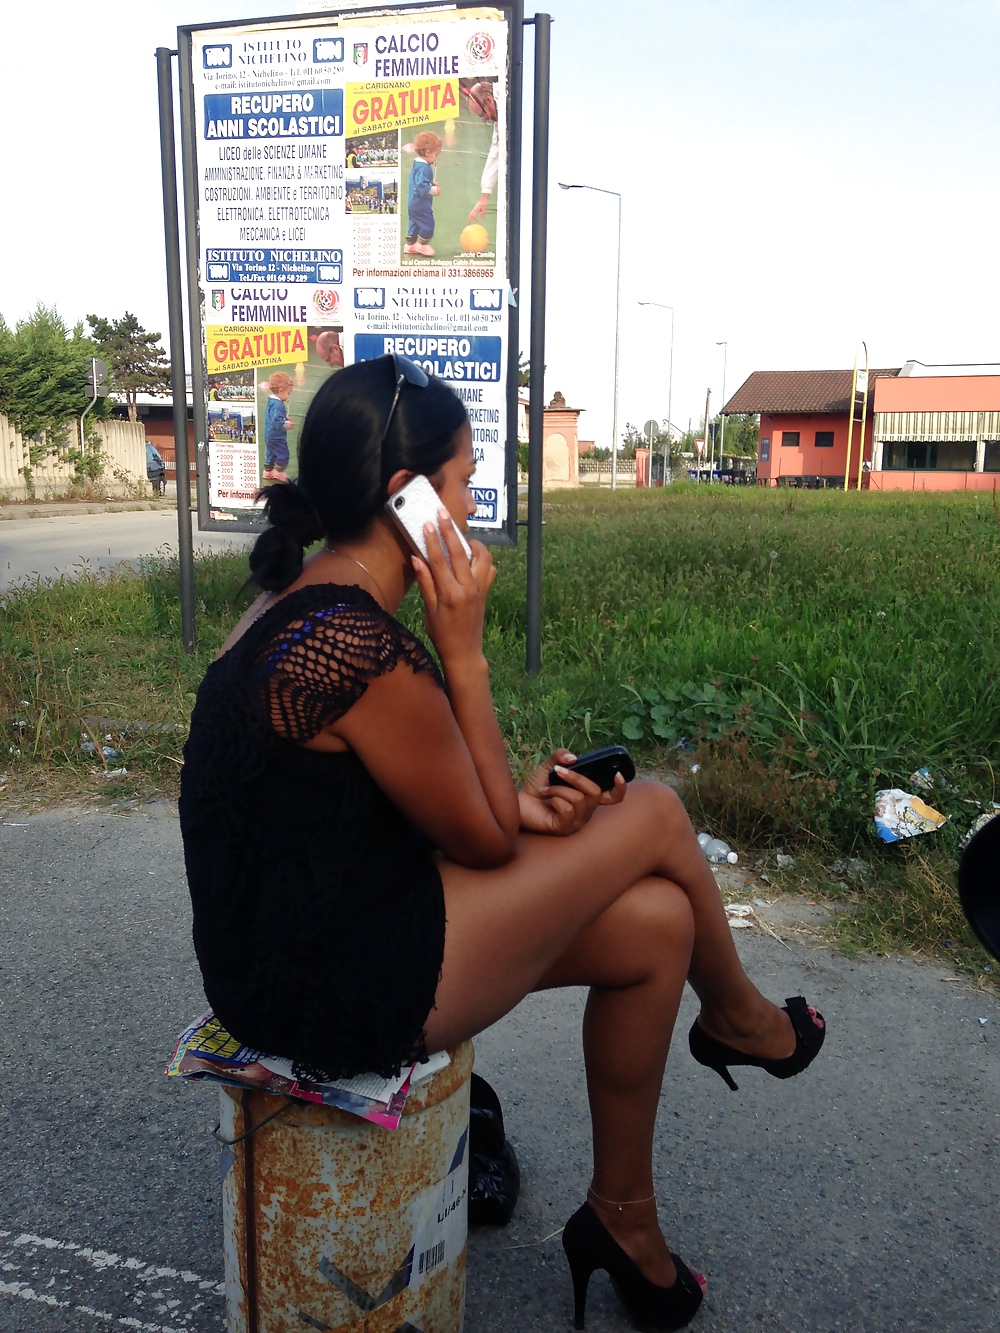 Prostituta di strada - puttane da strada #34248167